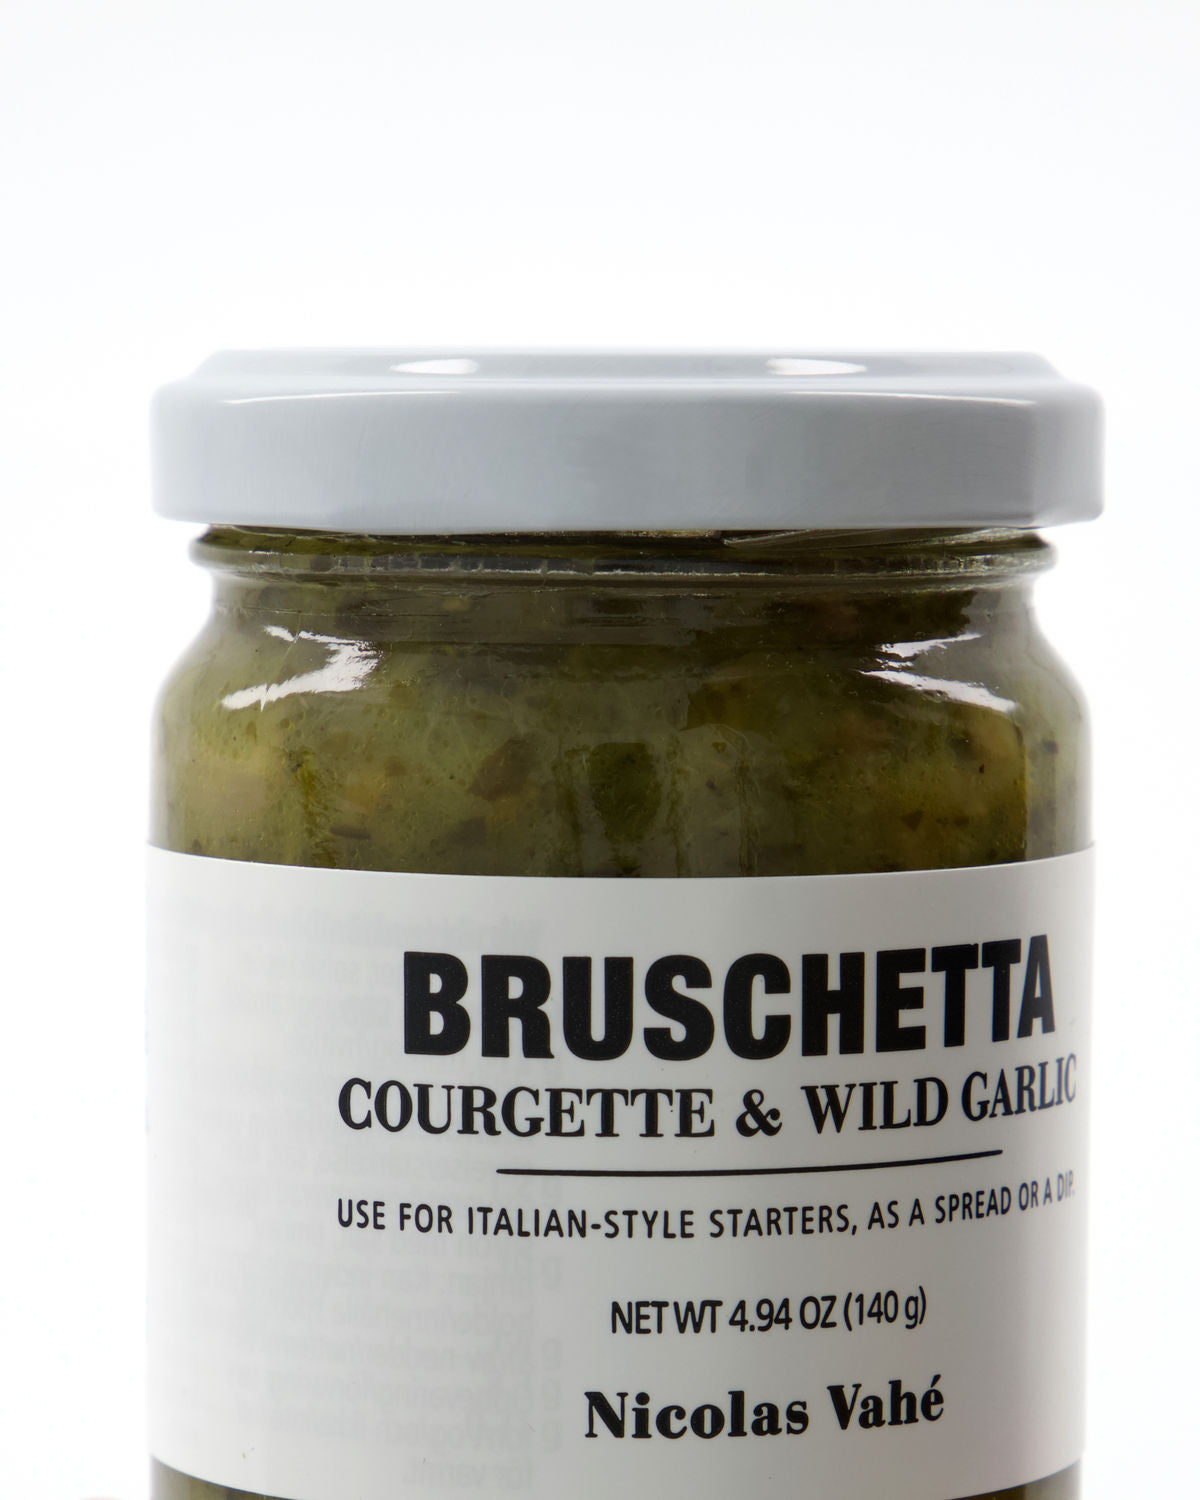 Bruschetta, courgette & wild garlic